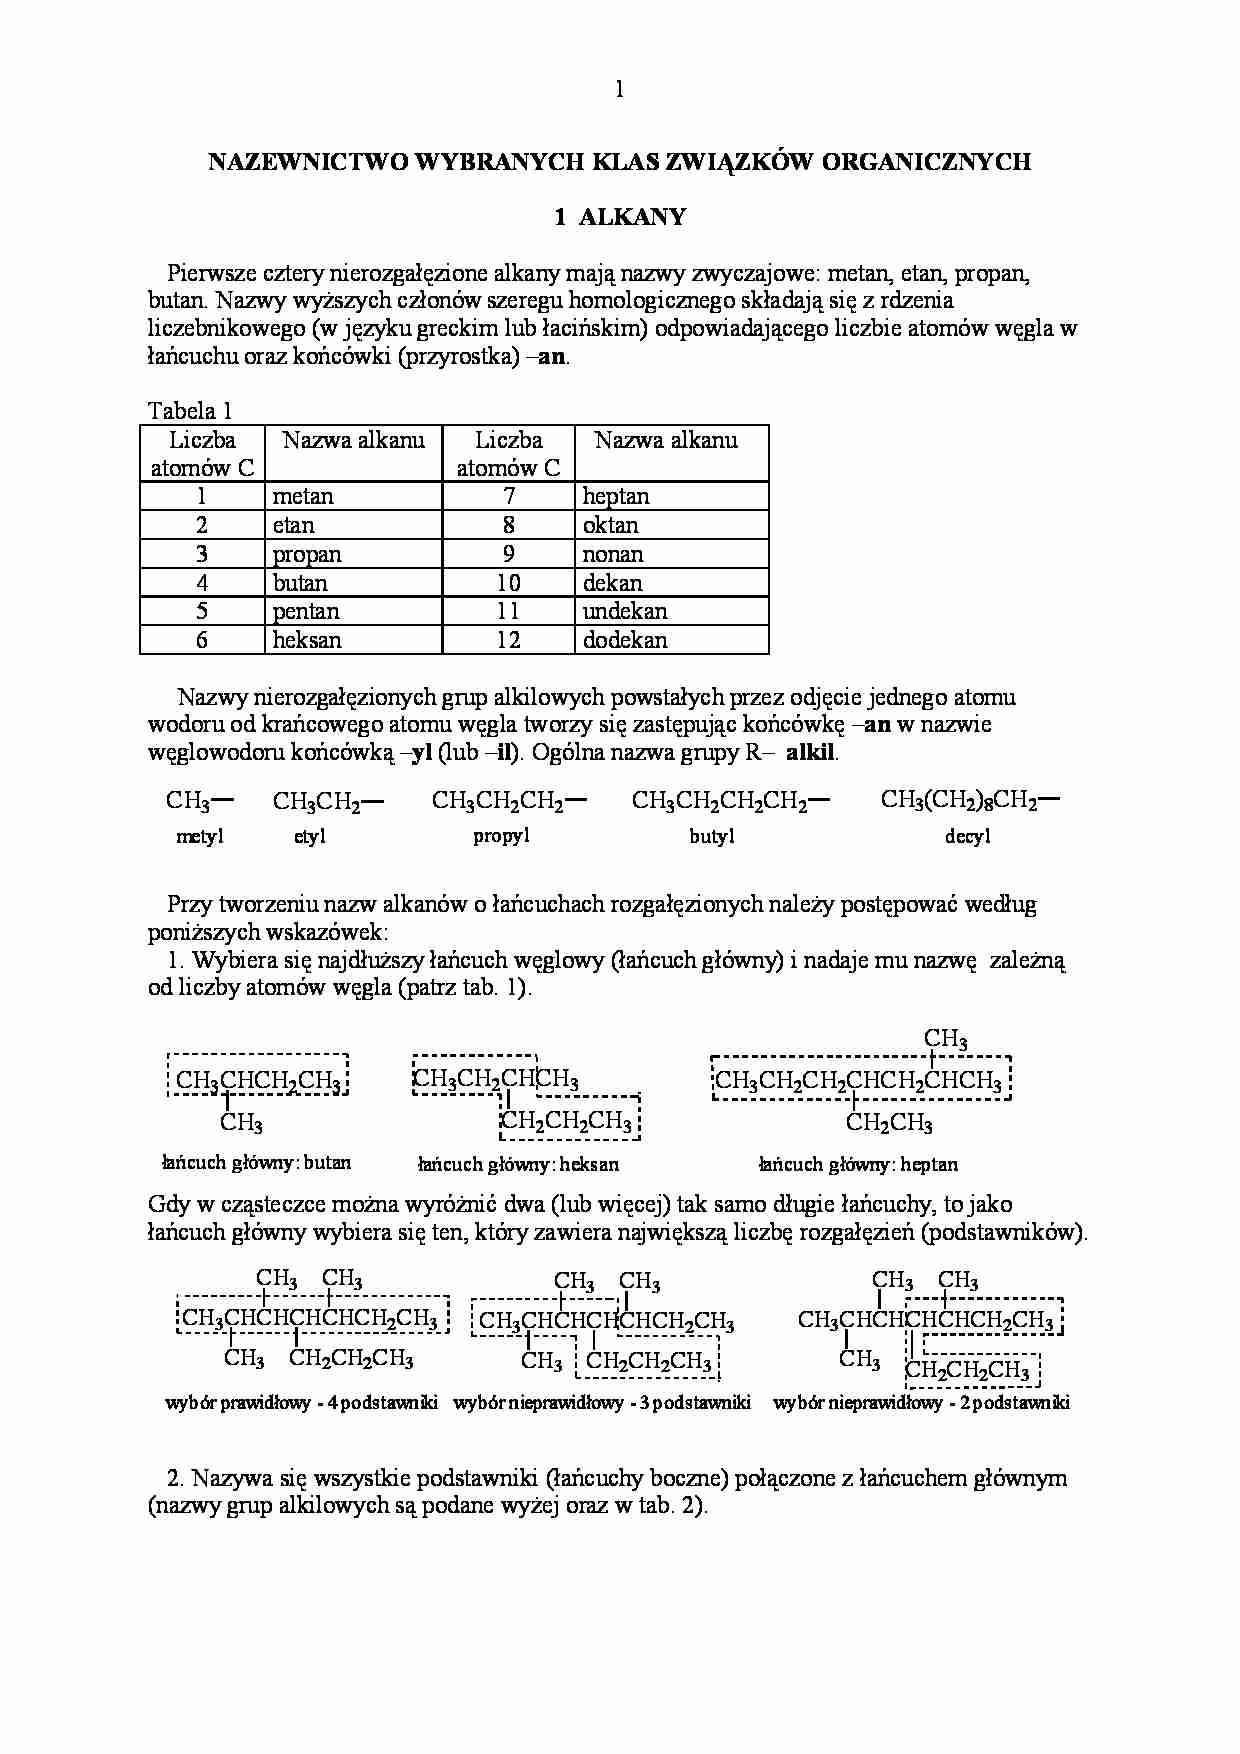 Nazewnictwo klas związków organicznych - wykład - strona 1